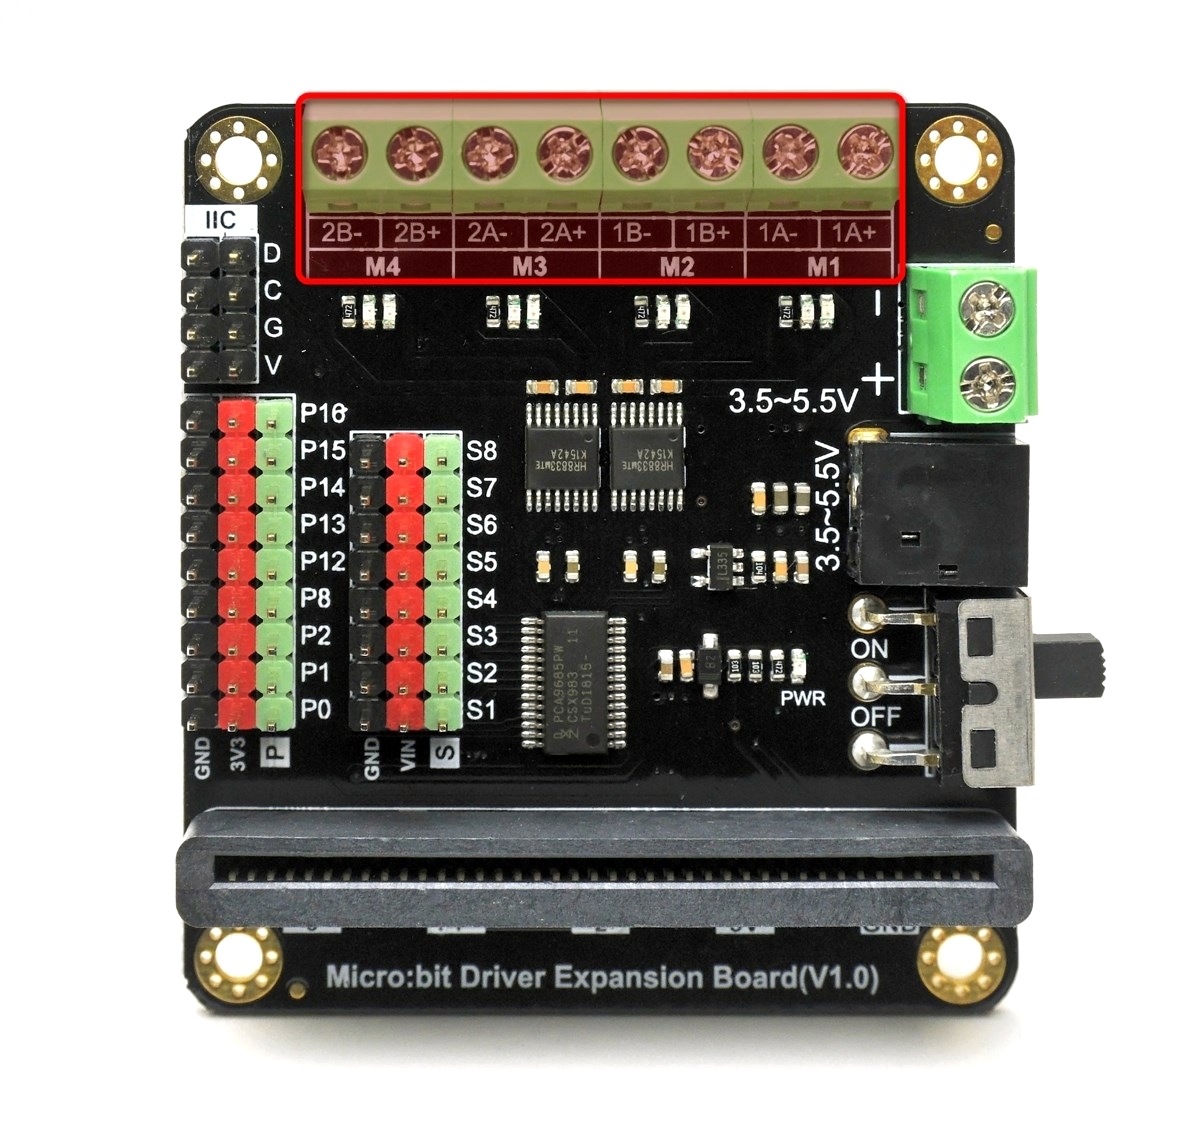 図9-3-3-5.Micro:bit Driver Expansion Boardのモーター端子（M1・M2・M3・M4）